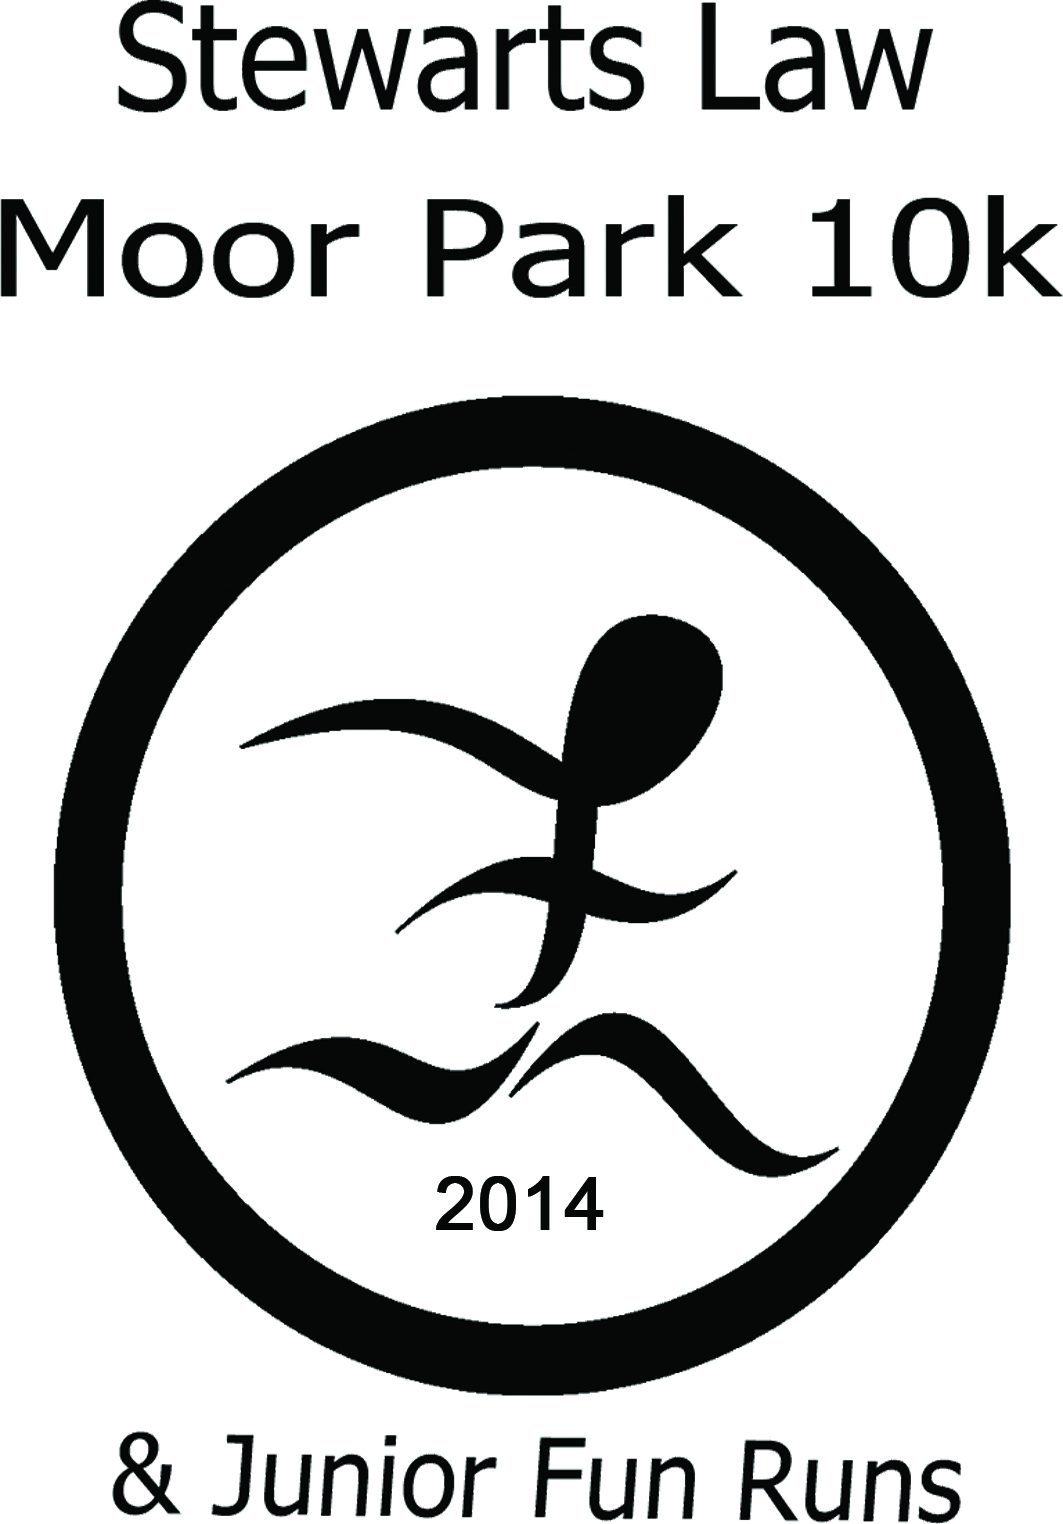 Moor Park 10k